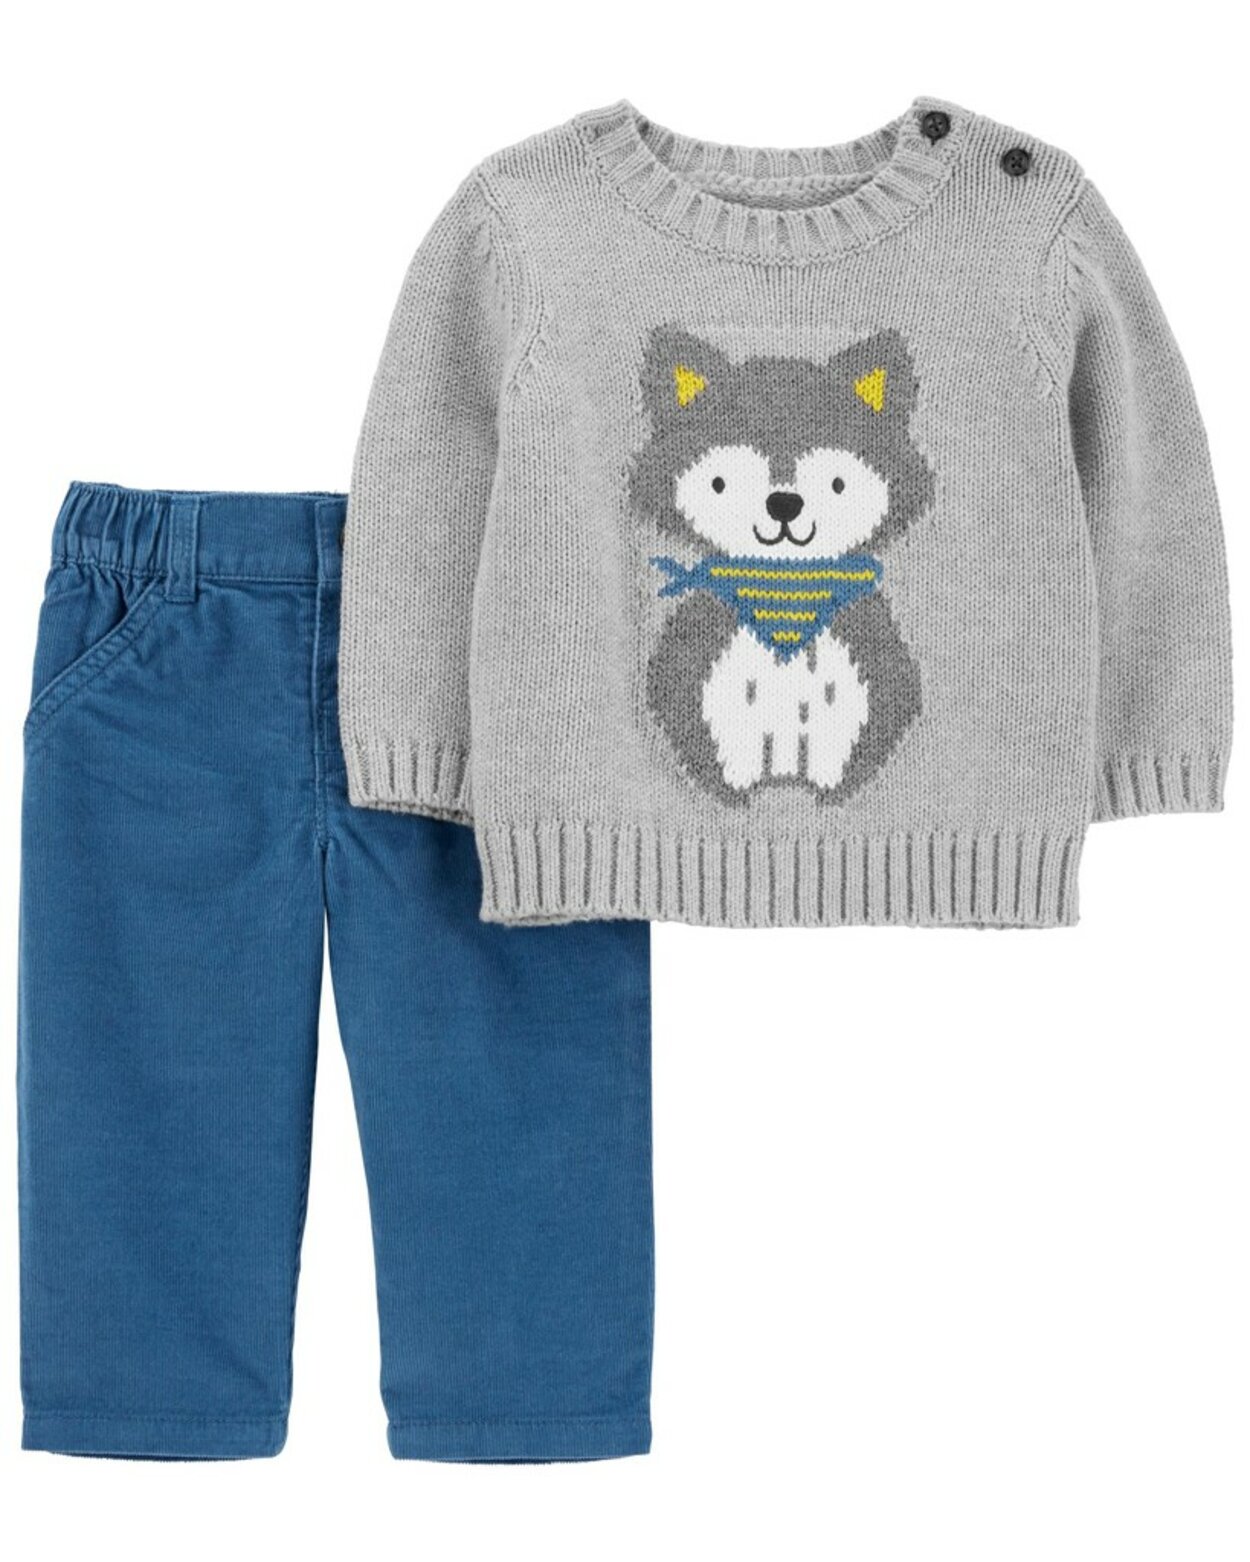 CARTER'S Set 2dielny sveter, nohavice Dog Grey chlapec 24m | Predeti.sk